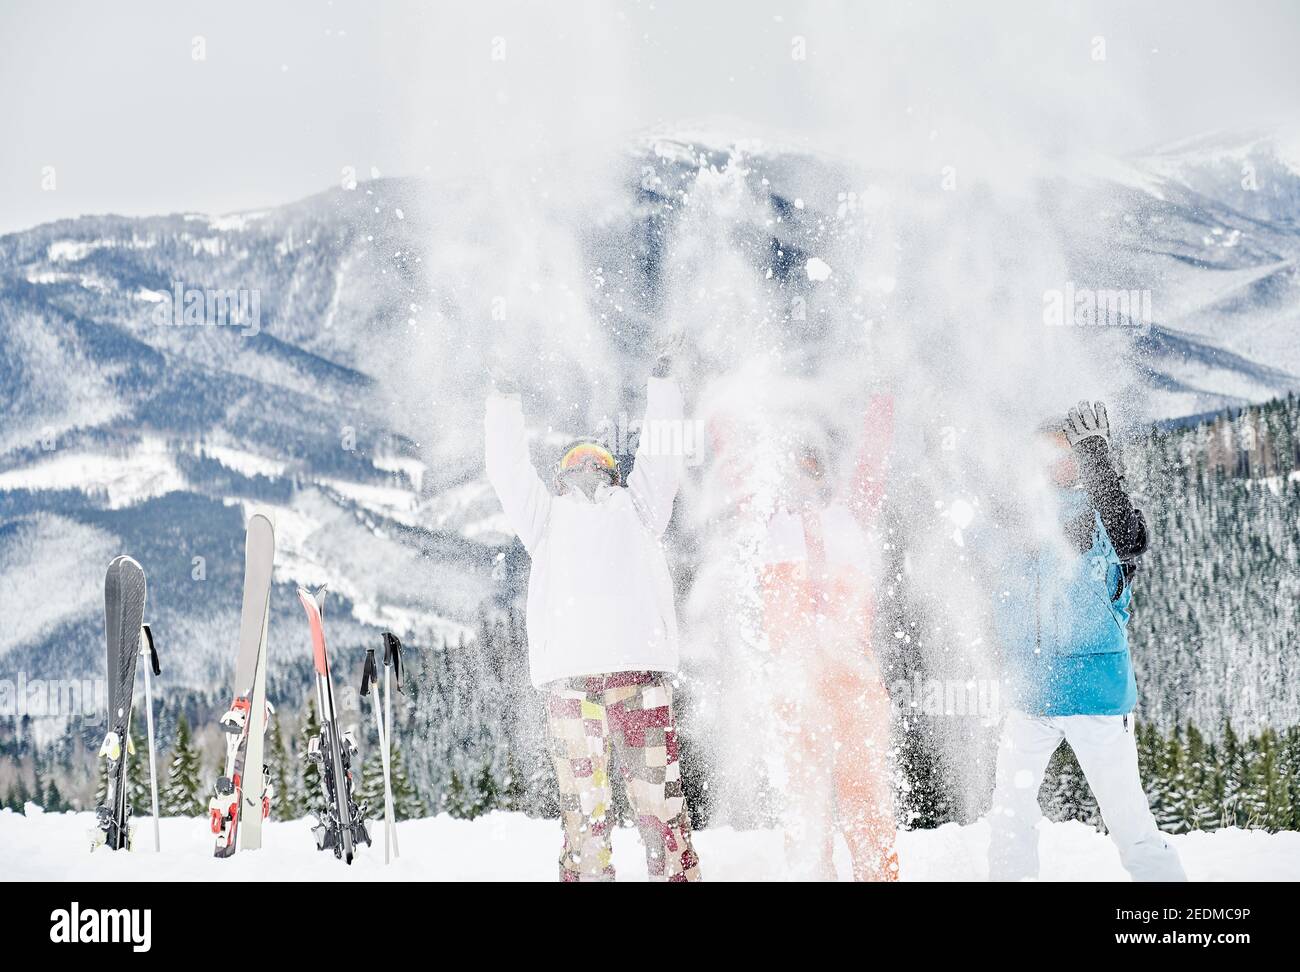 Drei Skifahrer in Skianzügen werfen frischen Pulverschnee hoch in die Luft, Spaß im Skigebiet mit schönen Bergen im Hintergrund. Konzept der Wintersport-Aktivitäten, Spaß und Beziehungen. Stockfoto